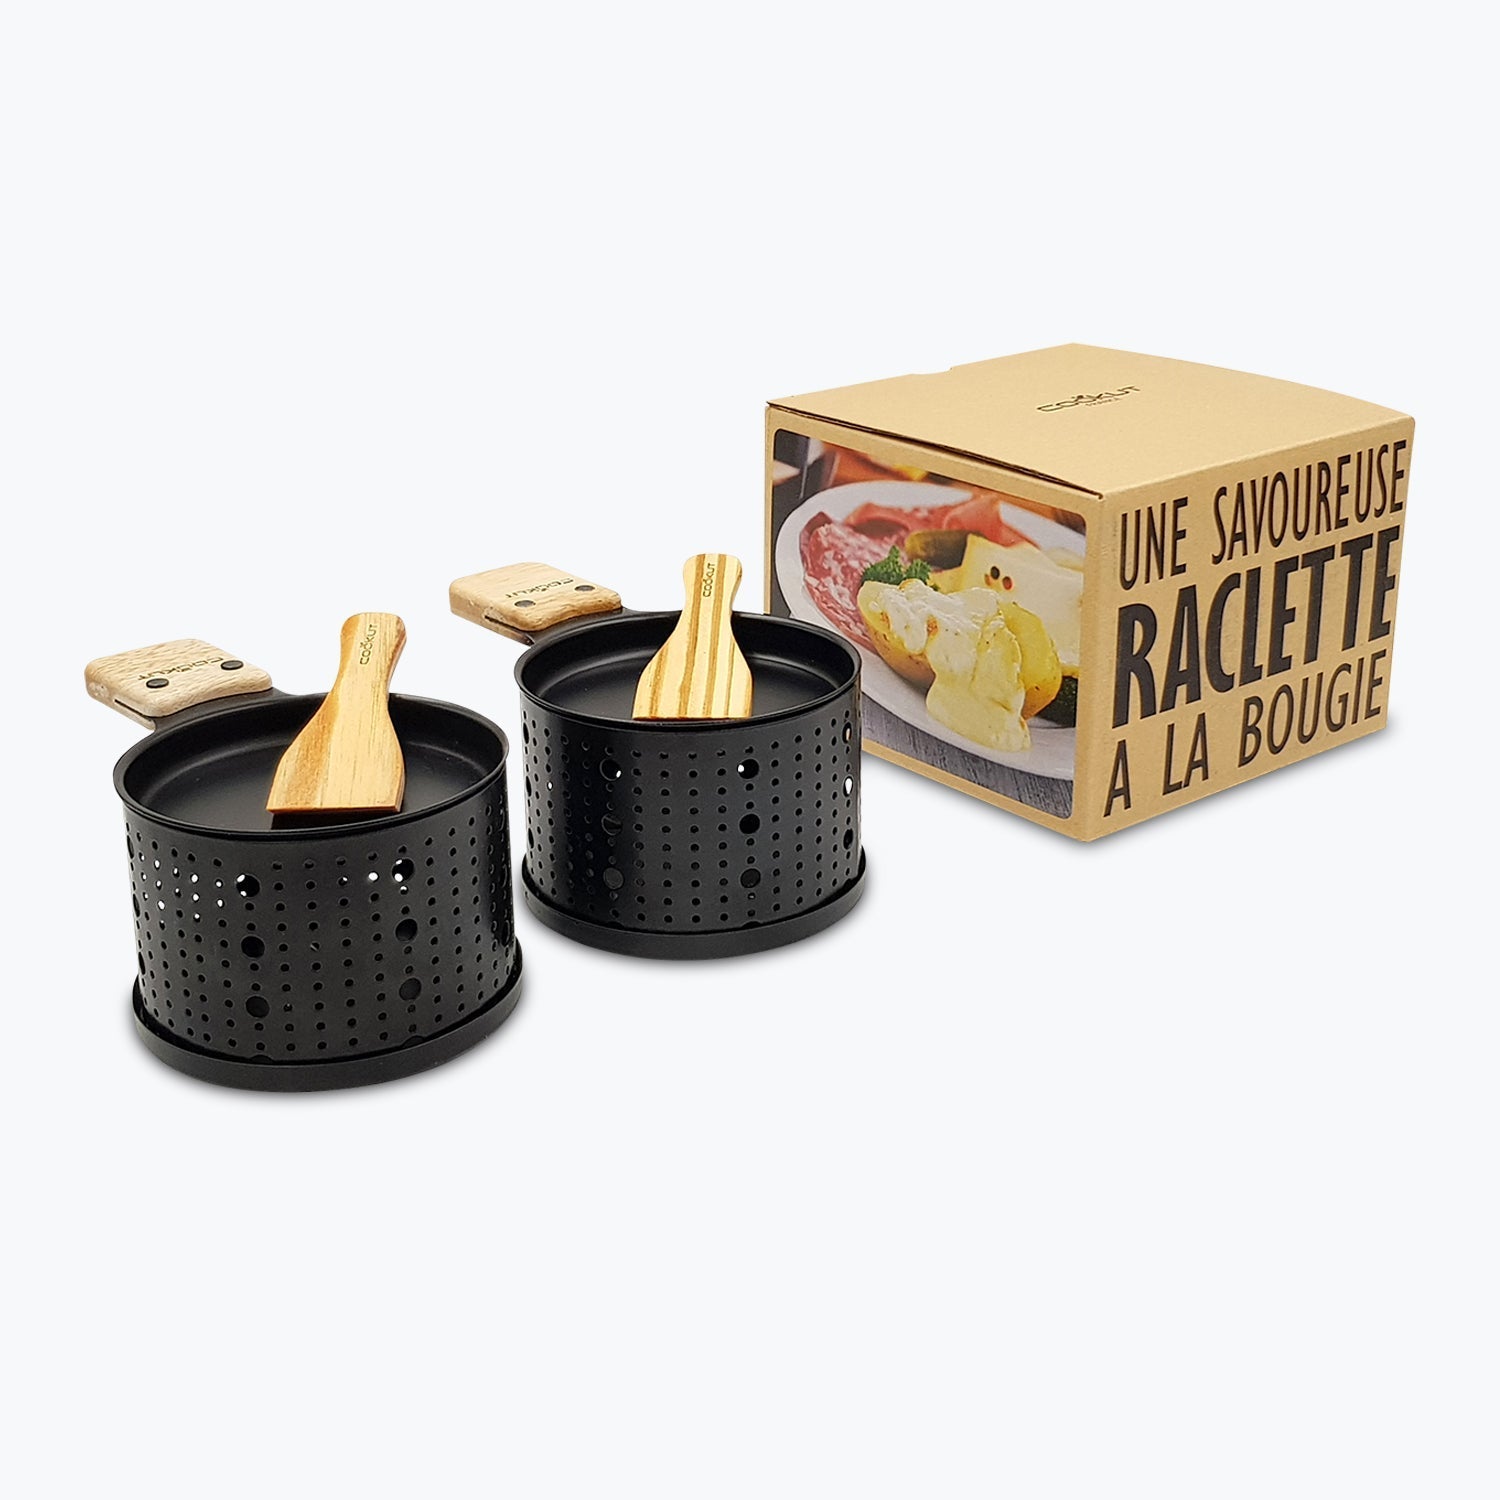 Raclette à la Bougie pour 2 - Cookut